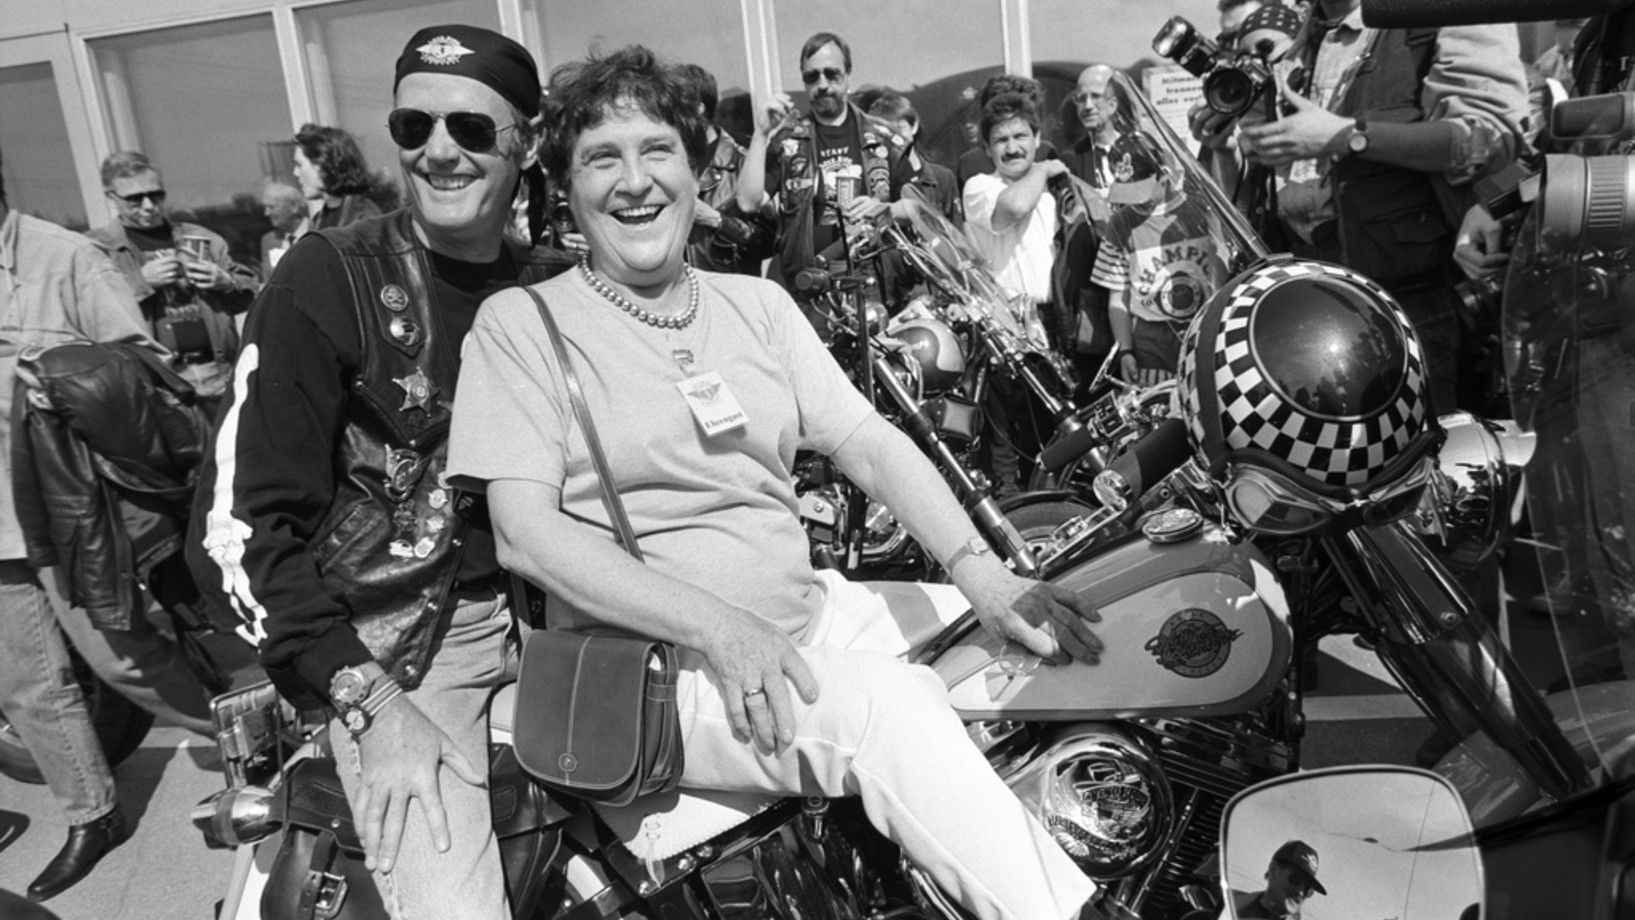 Peter Fonda mit Emilie Lieberherr auf einer legendären Harley-Davidson während einer Wohltätigkeitstour am 7. Mai 1995 in Dübendorf (Zürich). Das Geld ging an myopathische und behinderte Menschen. (Foto: Keystone/Walter Bieri)
